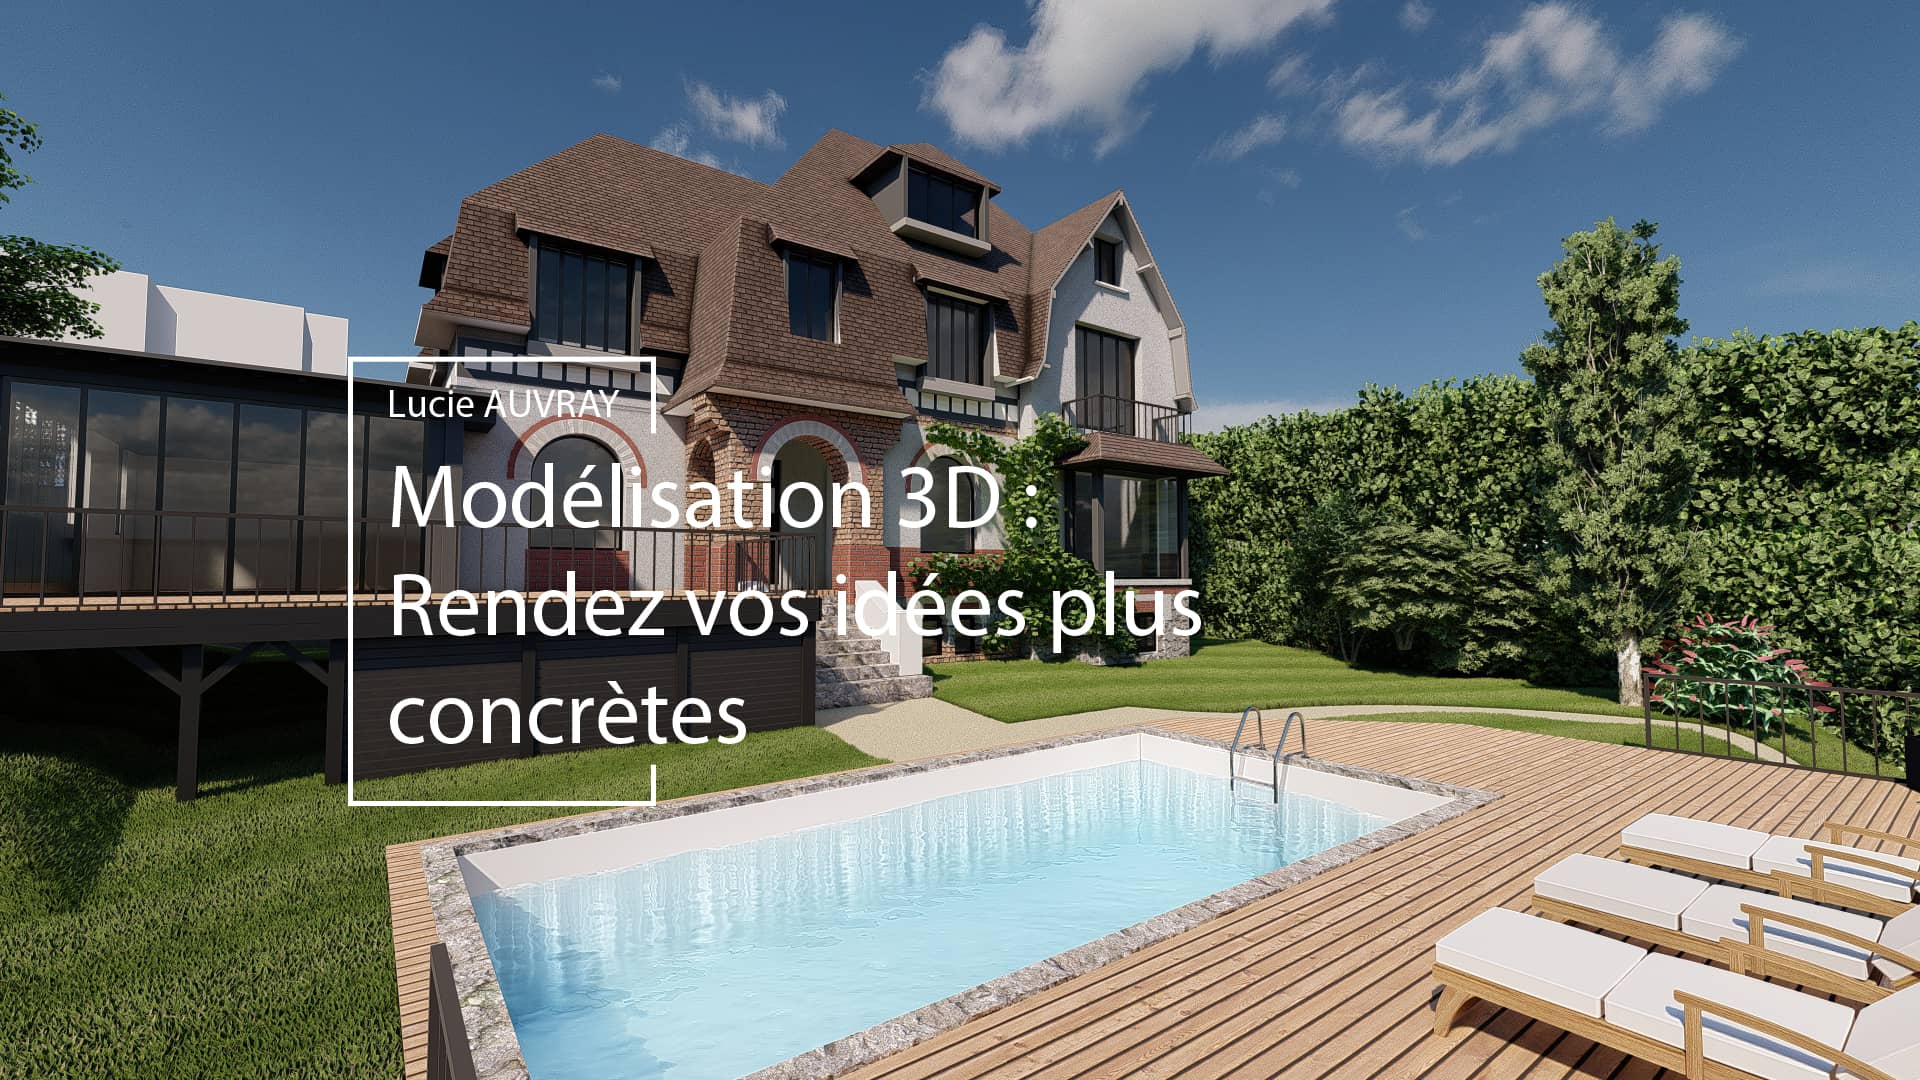 Modélisation 3D maison avec piscine par Lucie Auvray